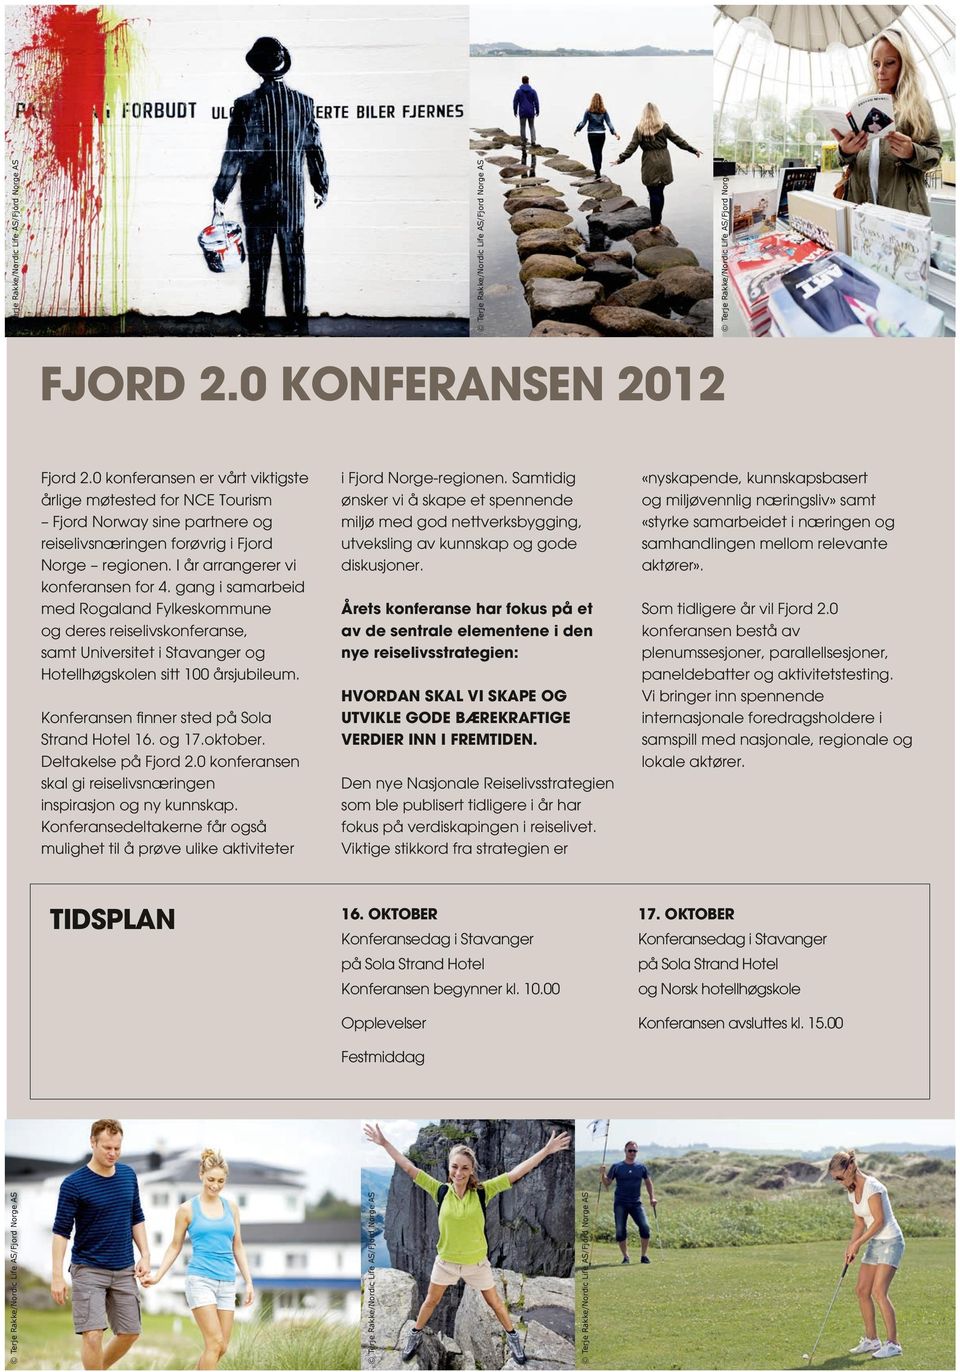 oktober. Deltakelse på Fjord 2.0 konferansen skal gi reiselivsnæringen inspirasjon og ny kunnskap. Konferansedeltakerne får også mulighet til å prøve ulike aktiviteter TIDSPLAN i Fjord Norge-regionen.